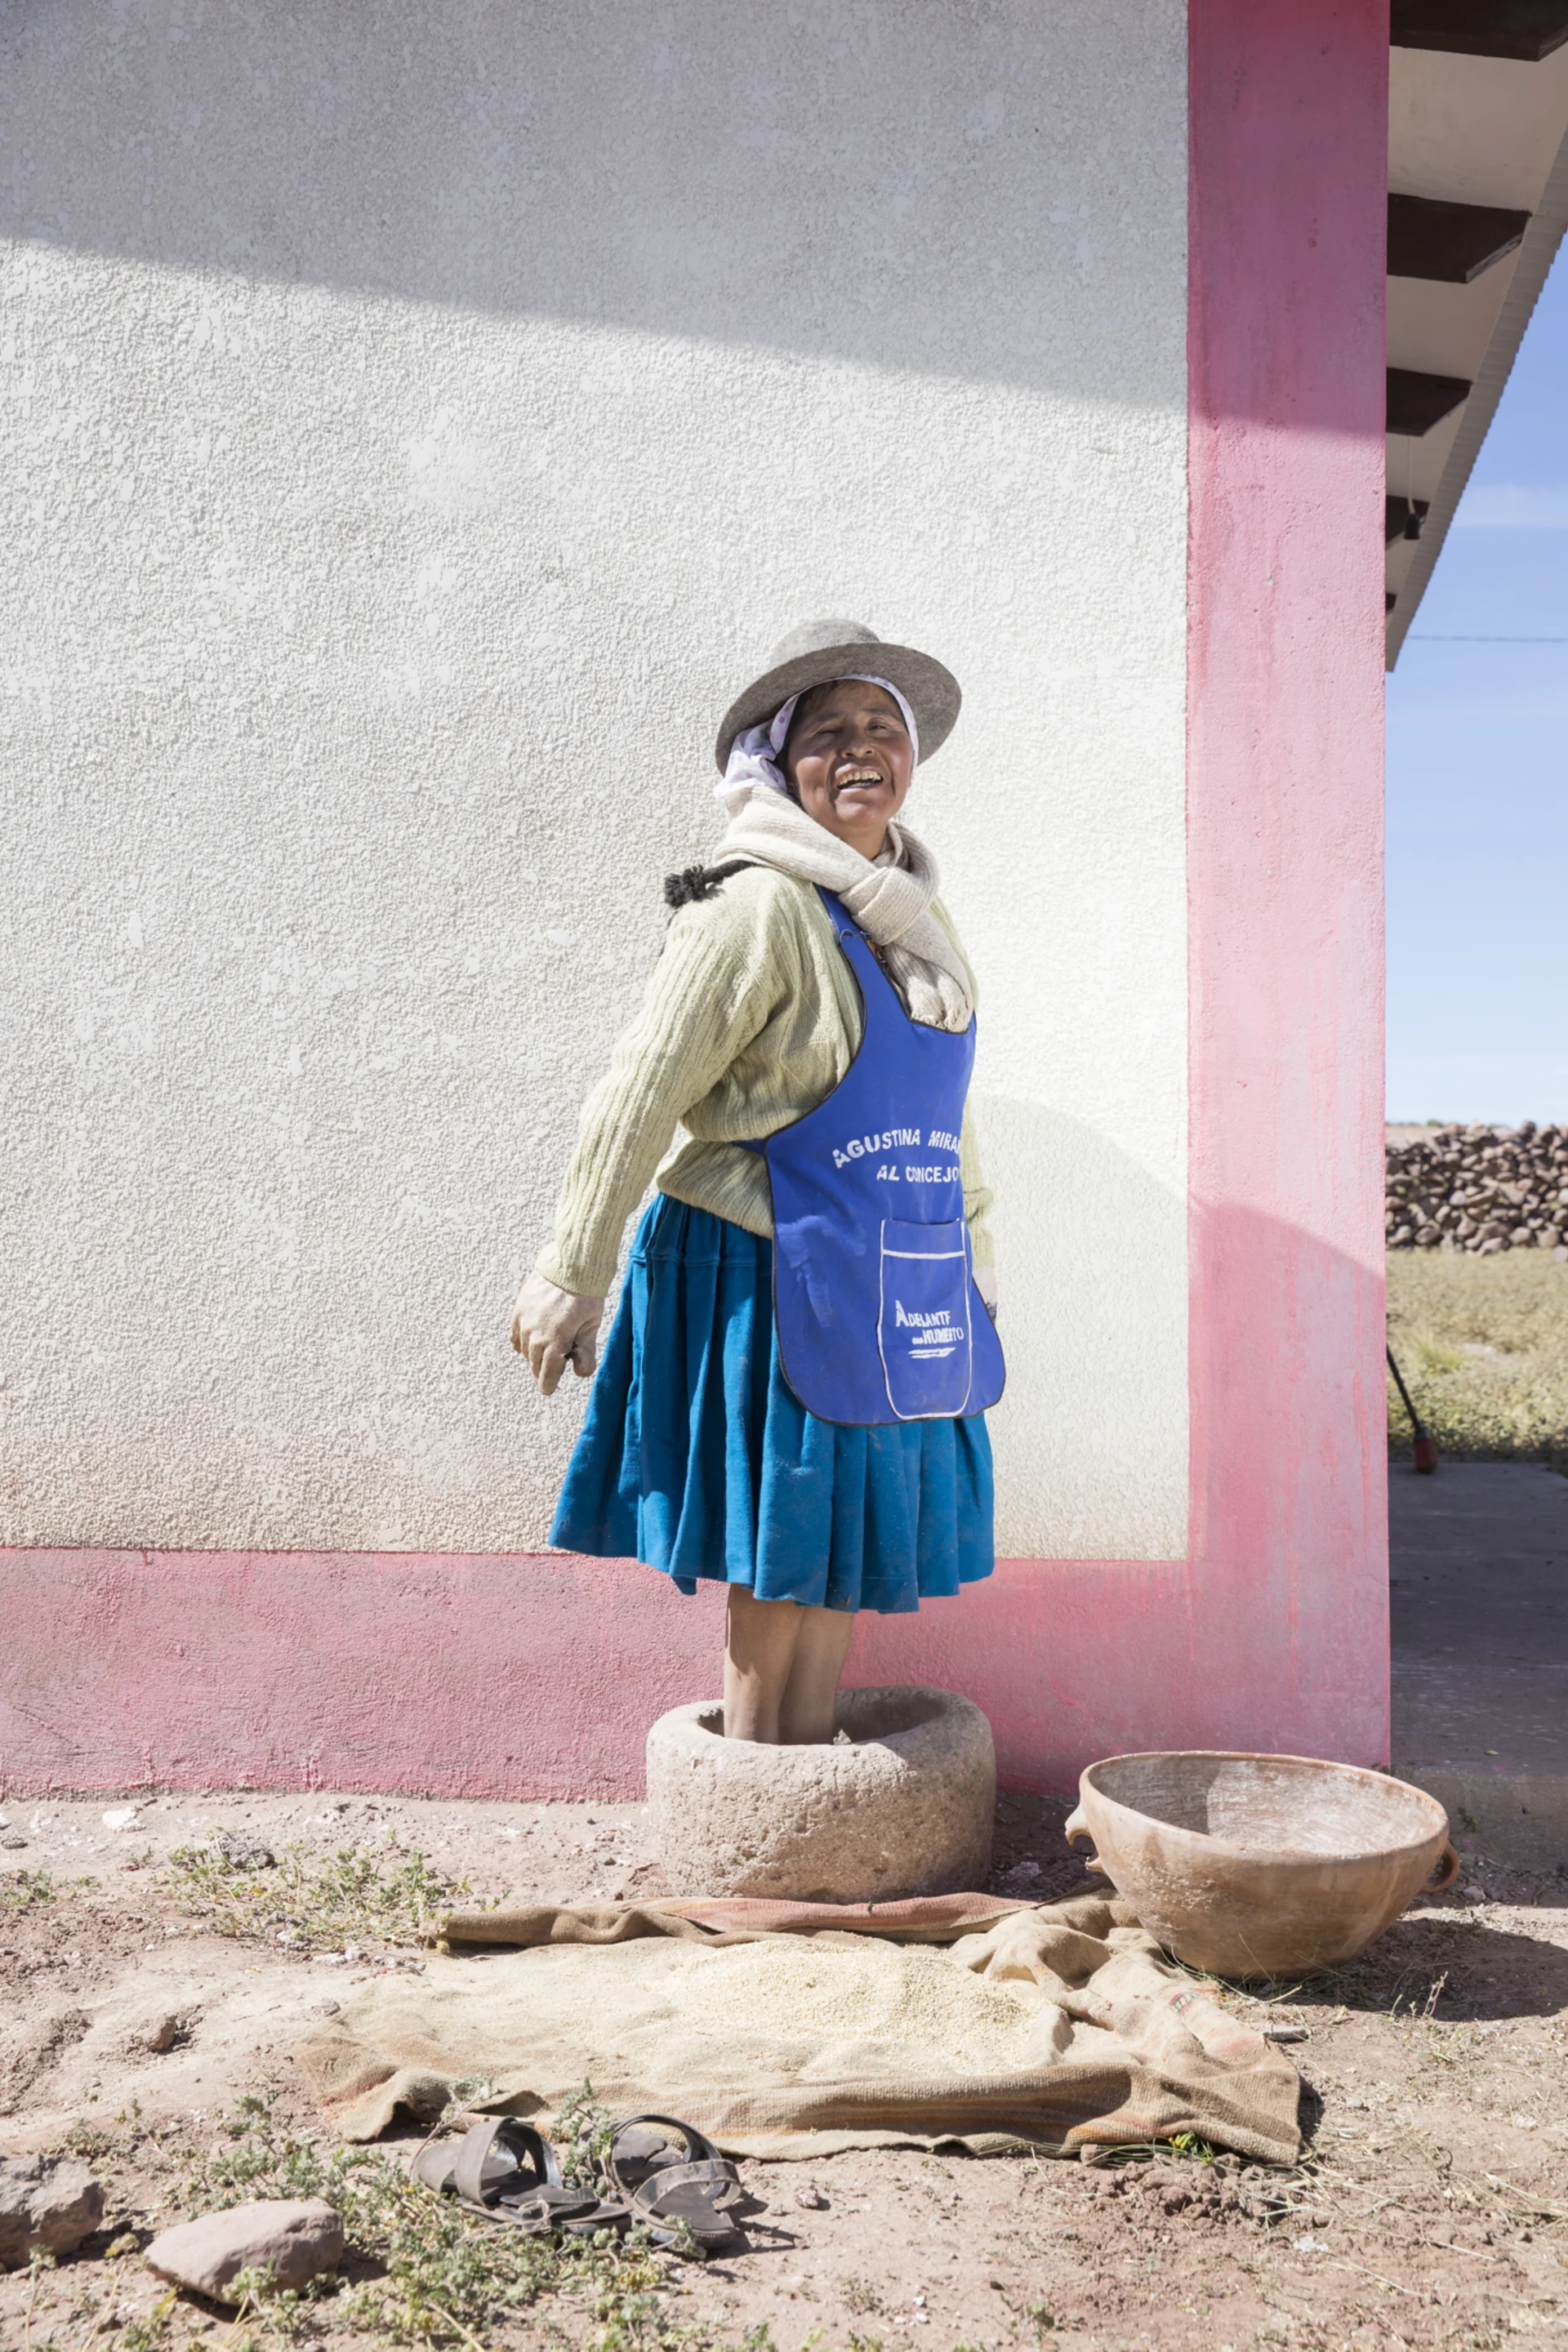 La raccoglitrice e cuoca Cecilia si trova di fronte a un muro rosa e ride davanti alla telecamera.